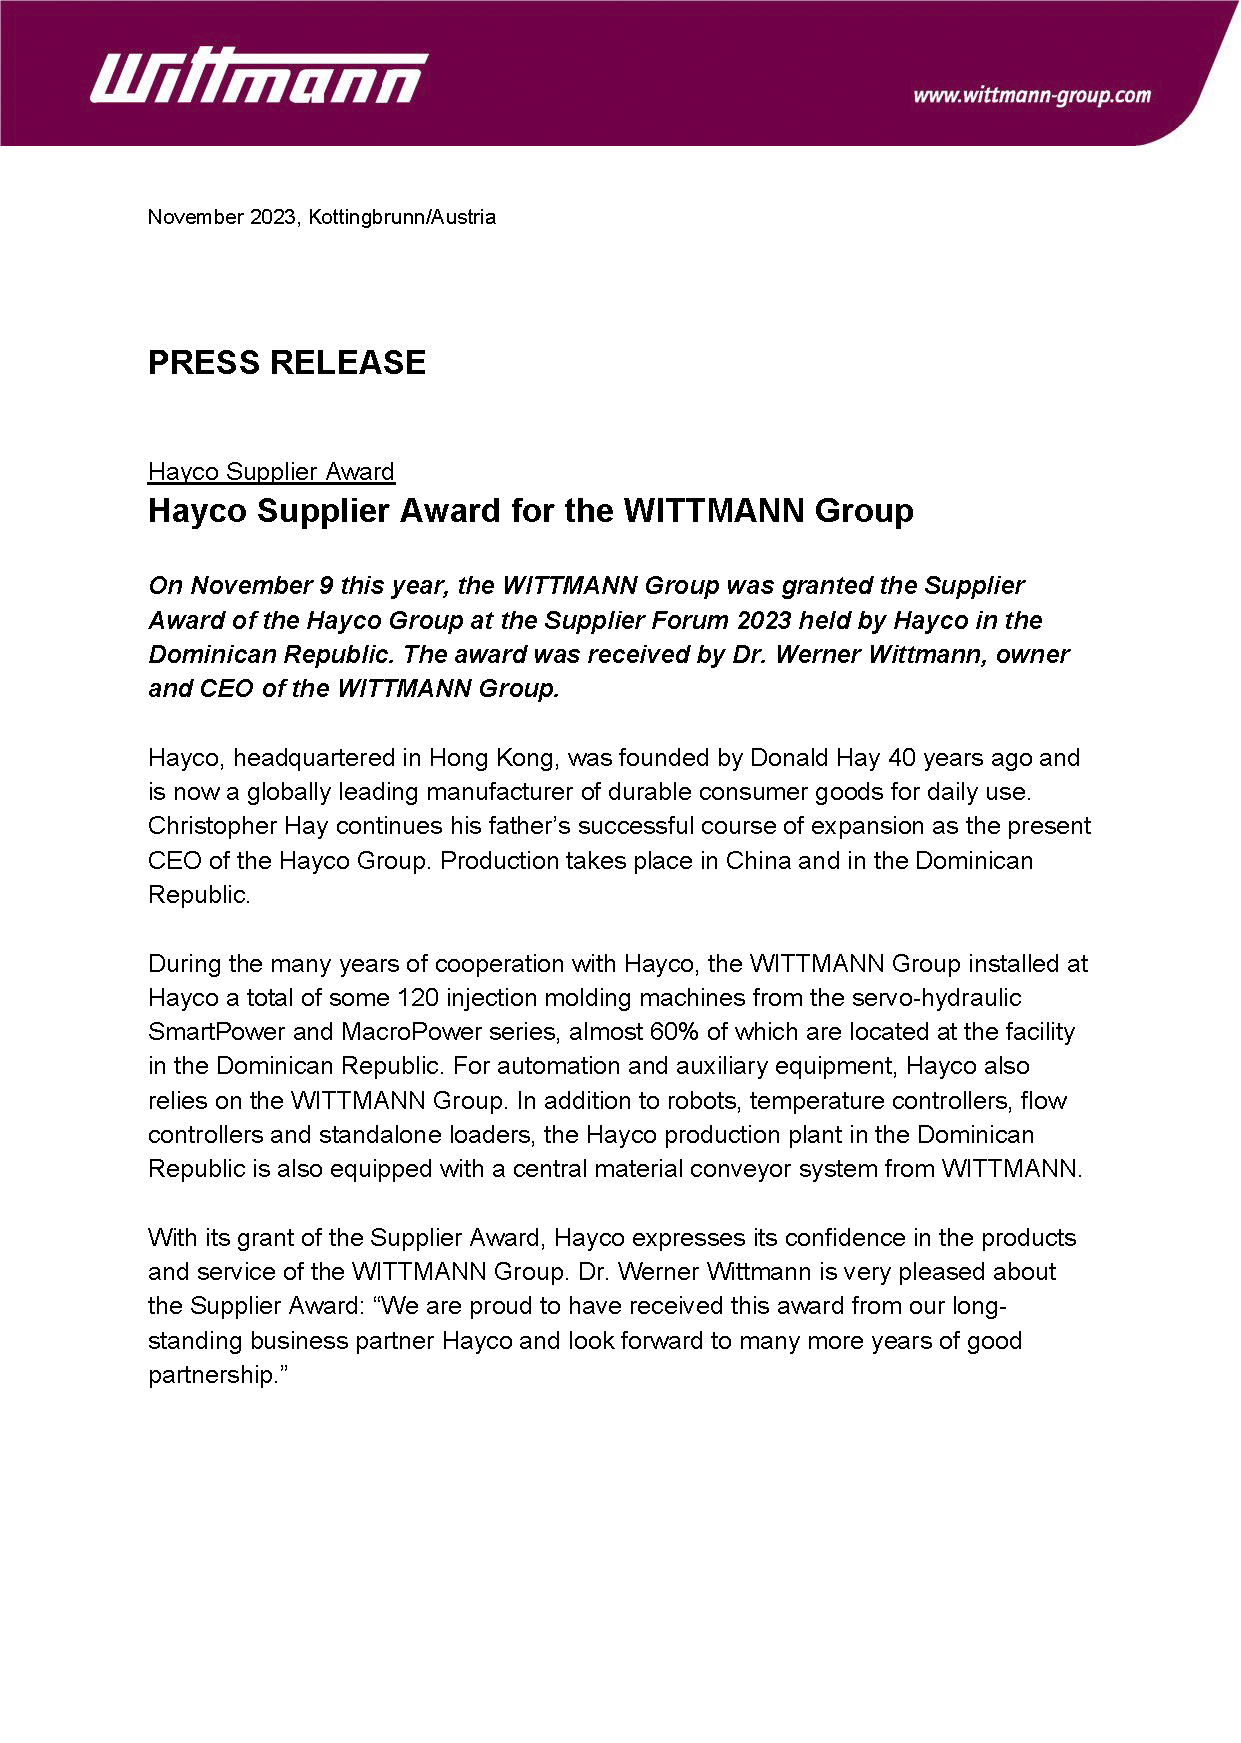 Wiba-PR-17-2023_Supplier Award Hayco_en